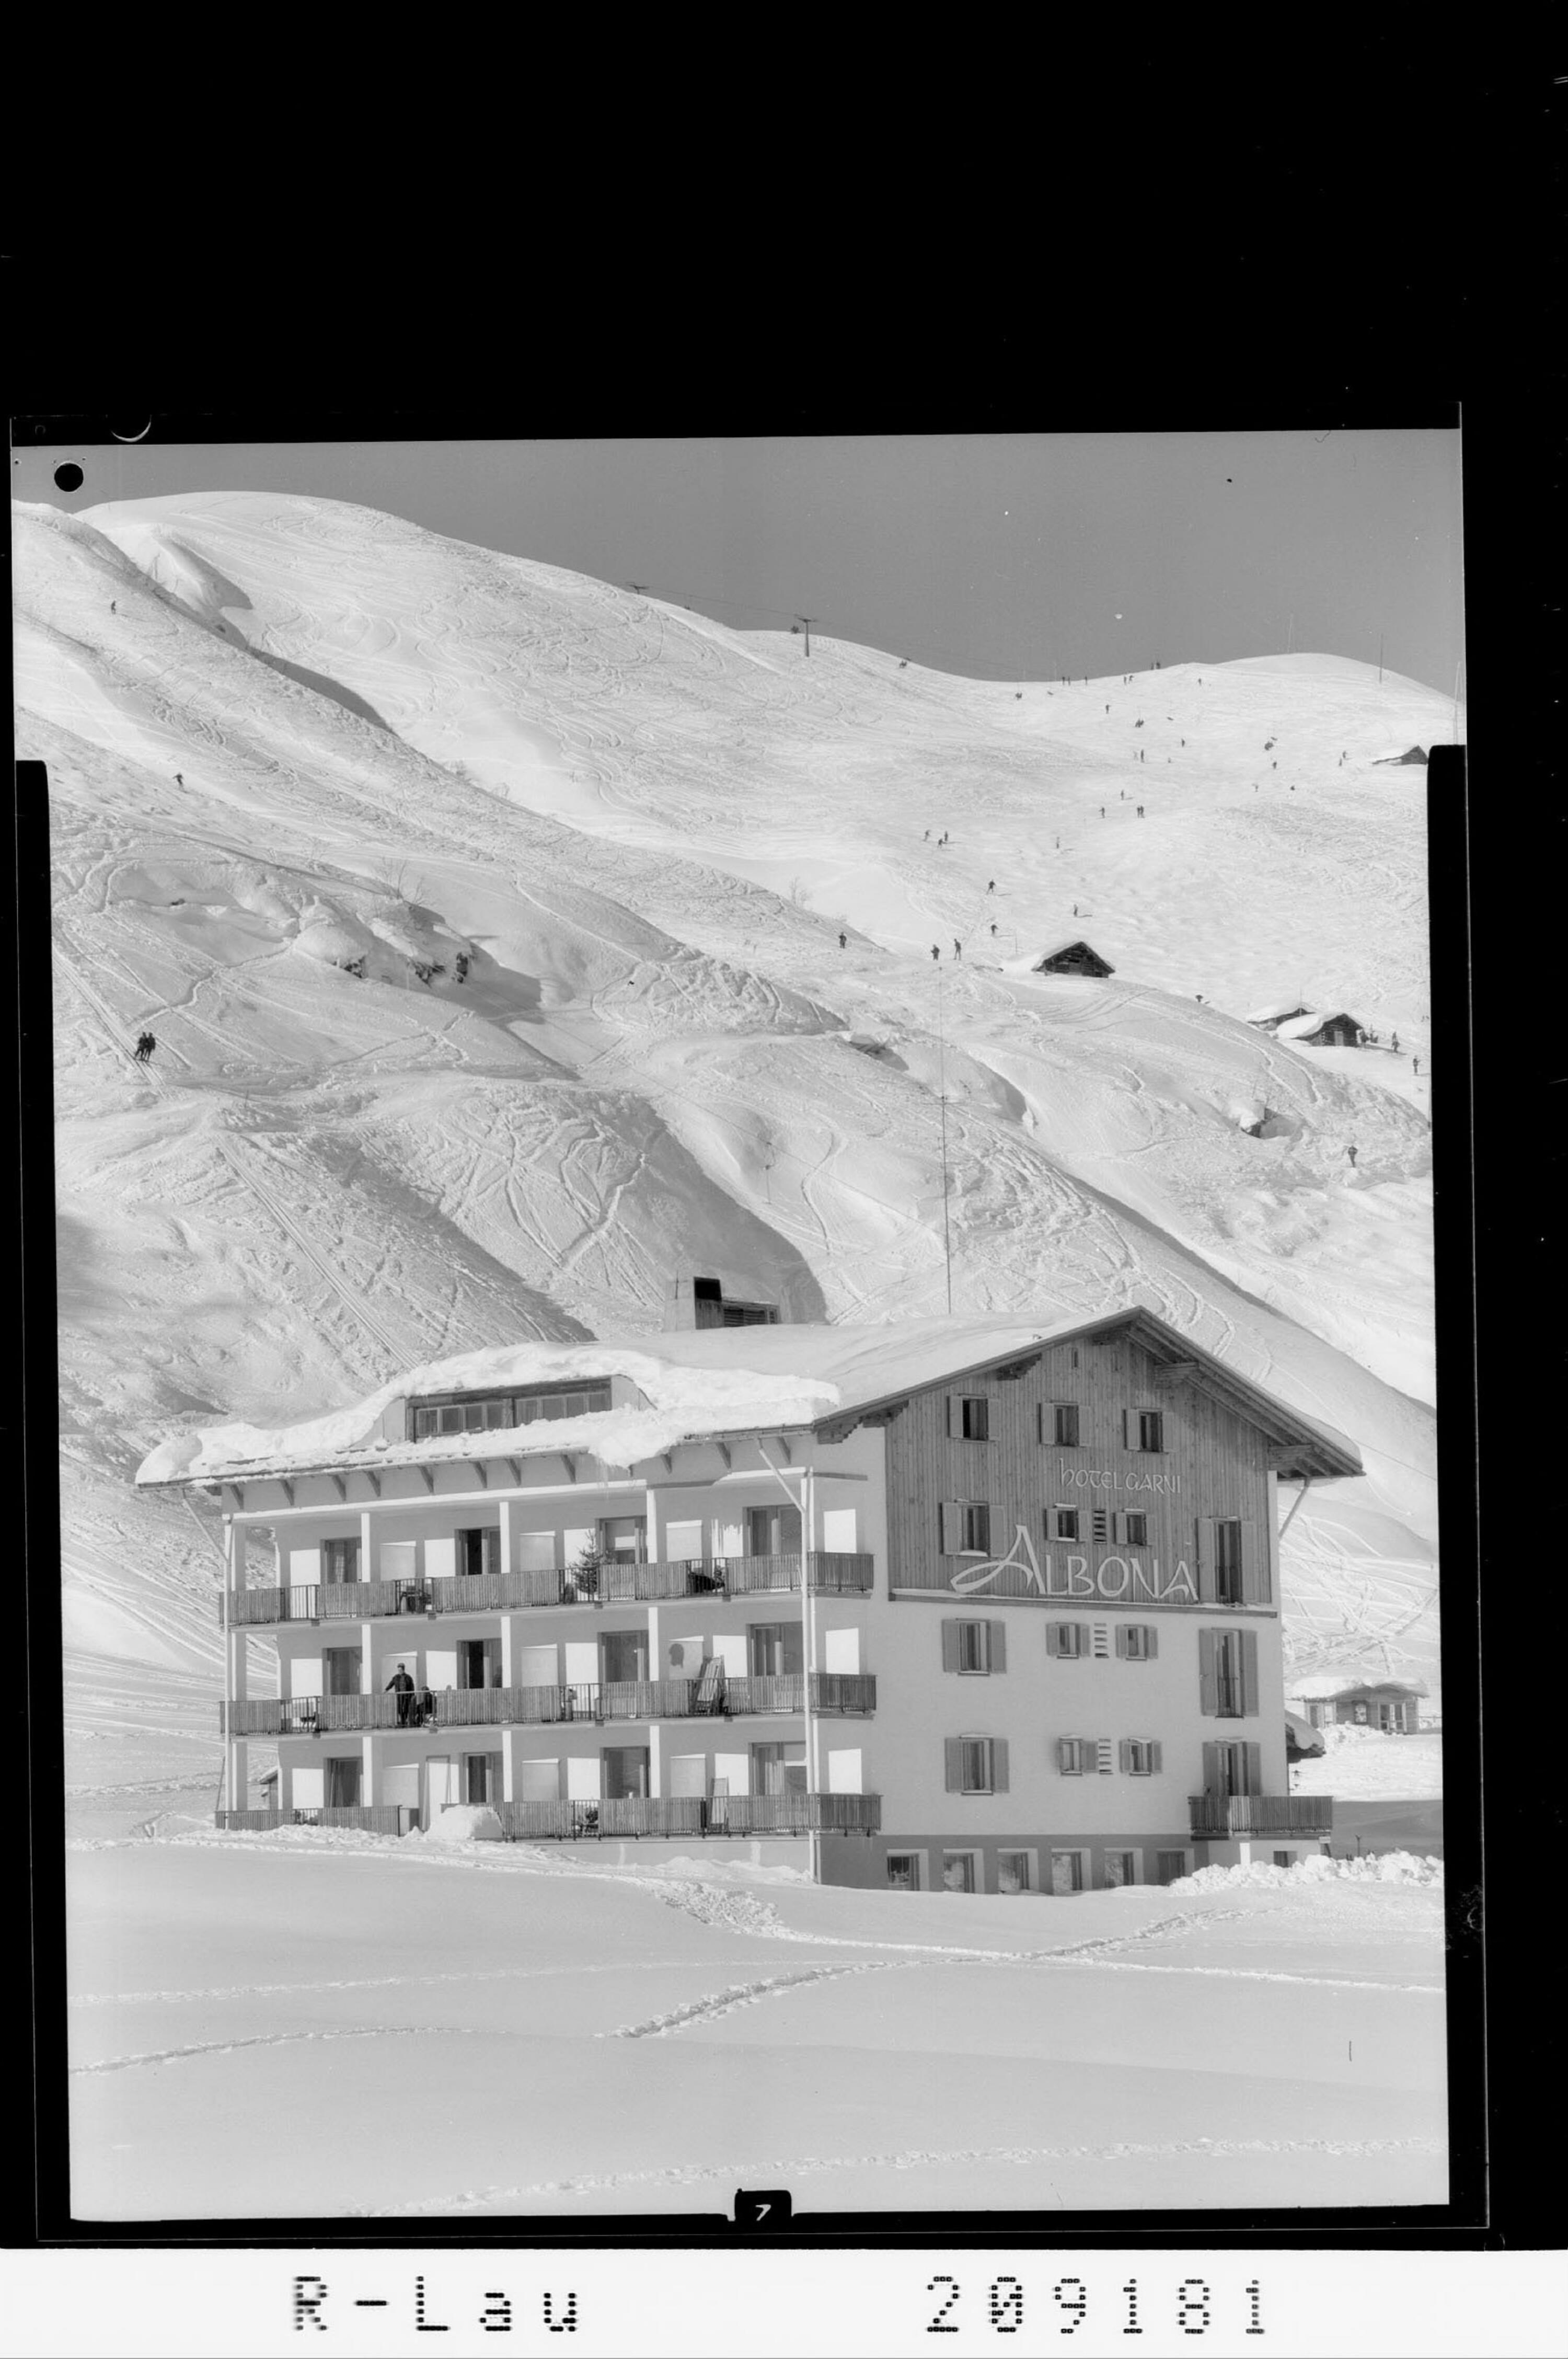 Zürs am Arlberg 1720 m, Hotel Albona></div>


    <hr>
    <div class=